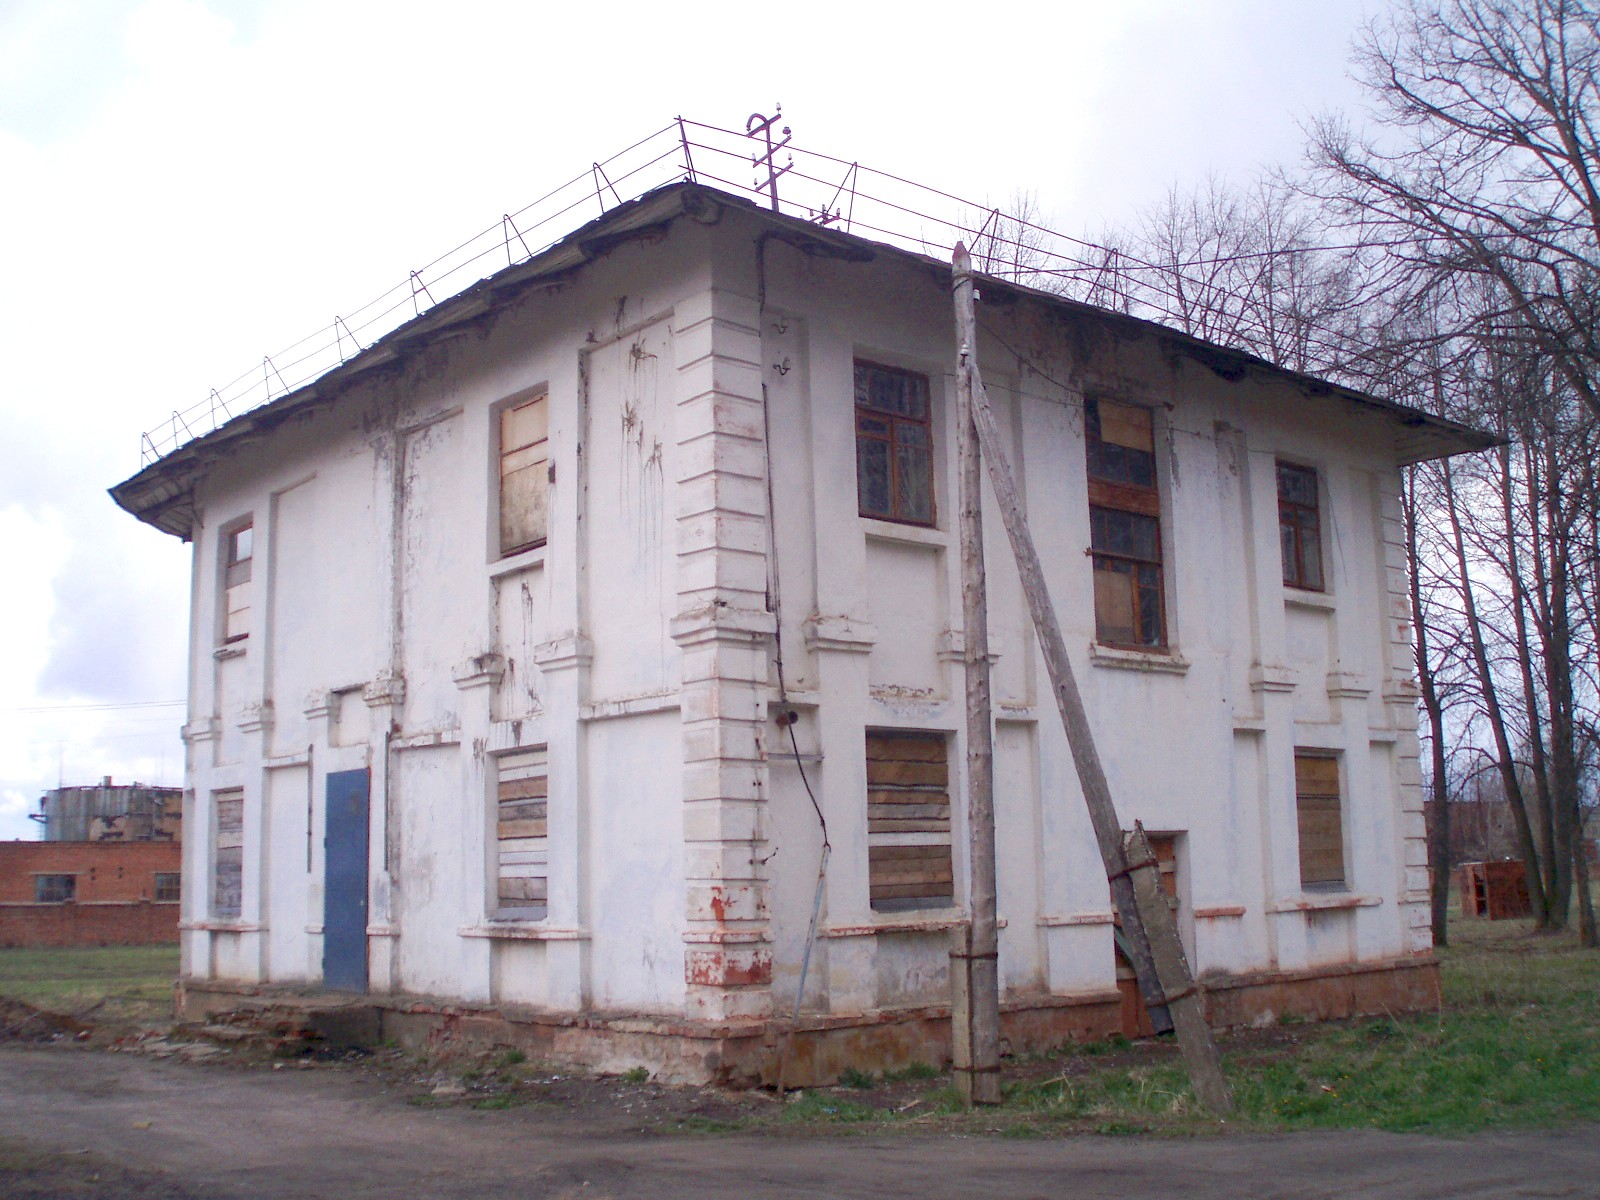 Узкоколейная железная дорога Комсомольского транспортного управления - фотографии, сделанные в 2007 году (часть 2)